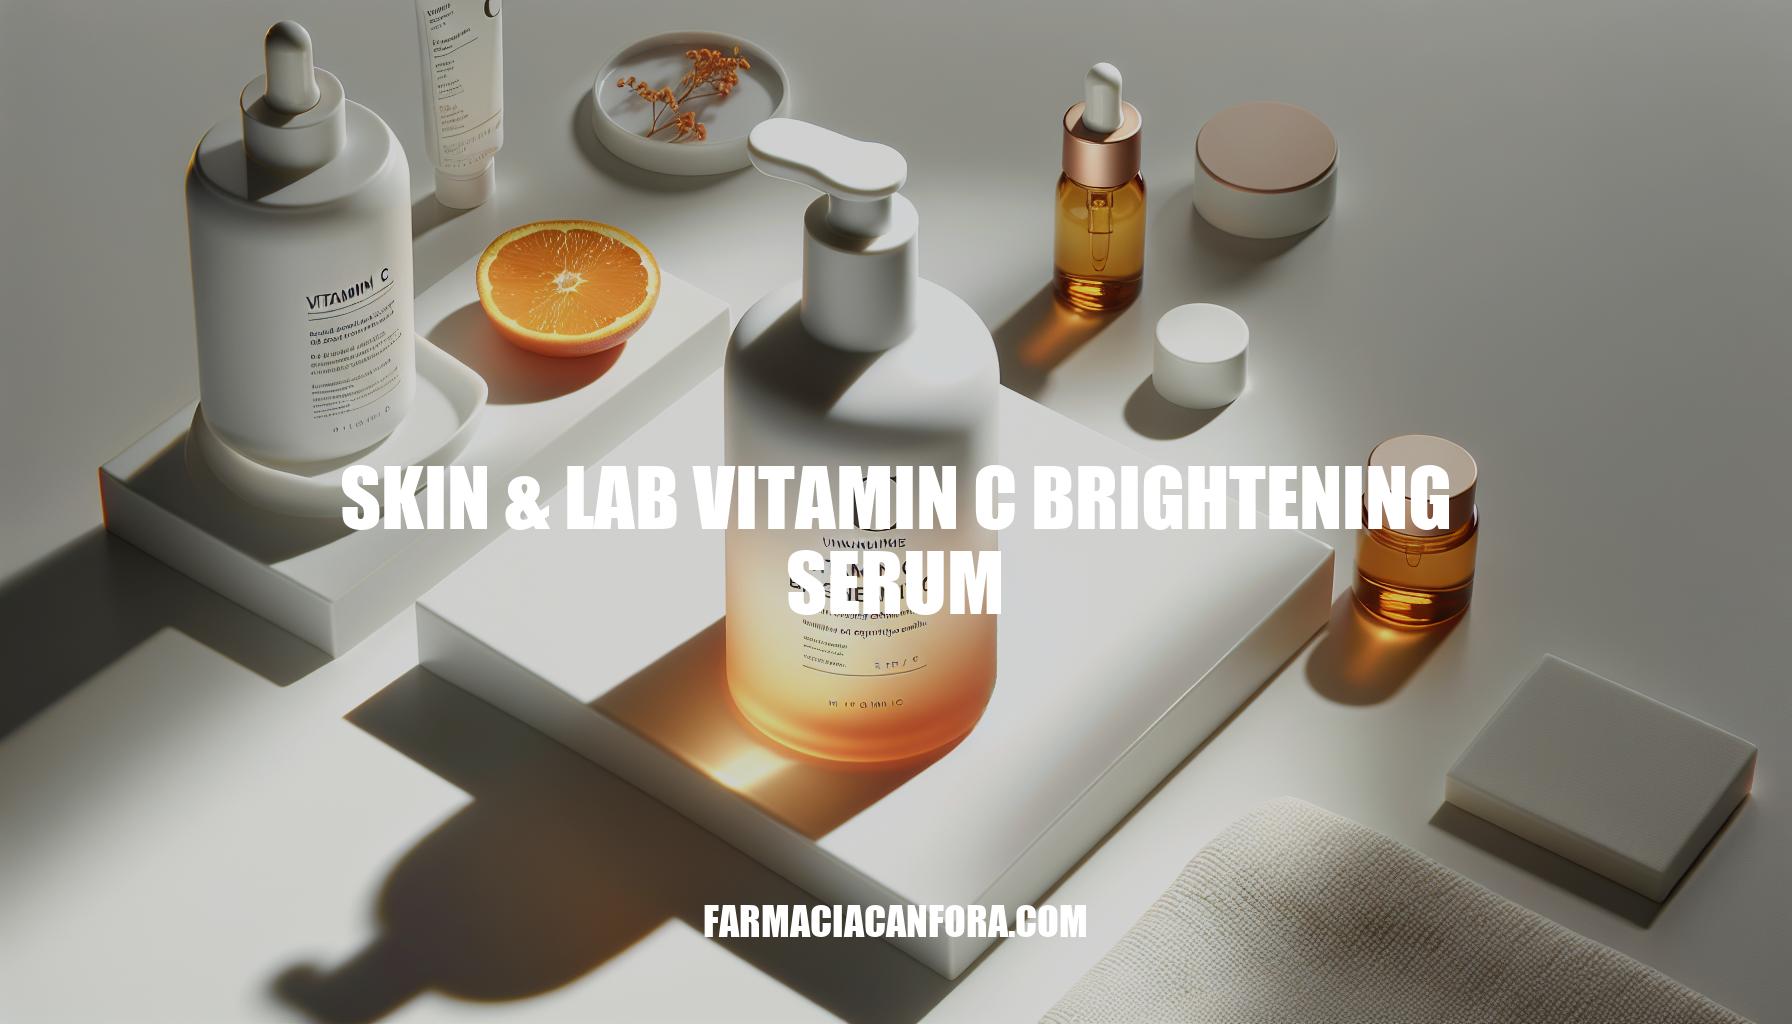 Skin & Lab Vitamin C Brightening Serum: Benefits, Reviews, and Where to Buy